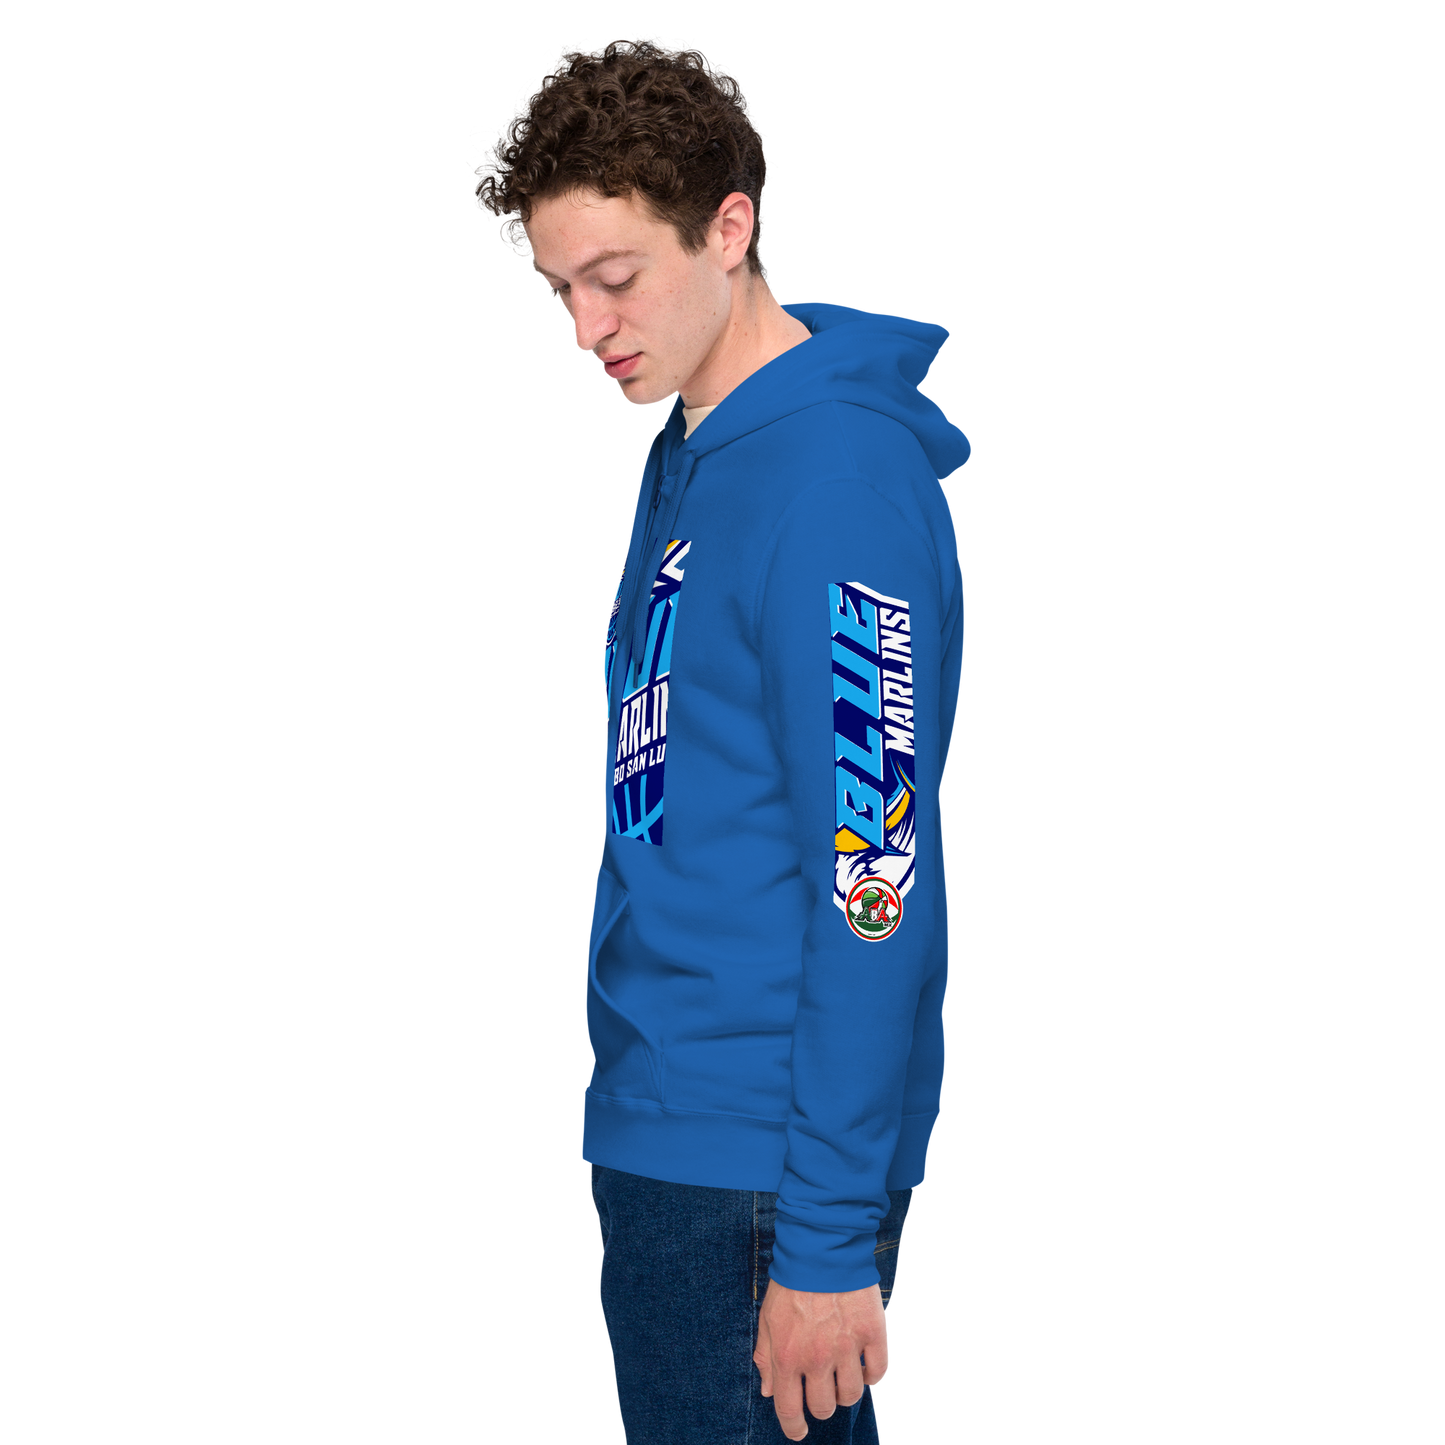 BLUE MARLINS TEAM  zip hoodie